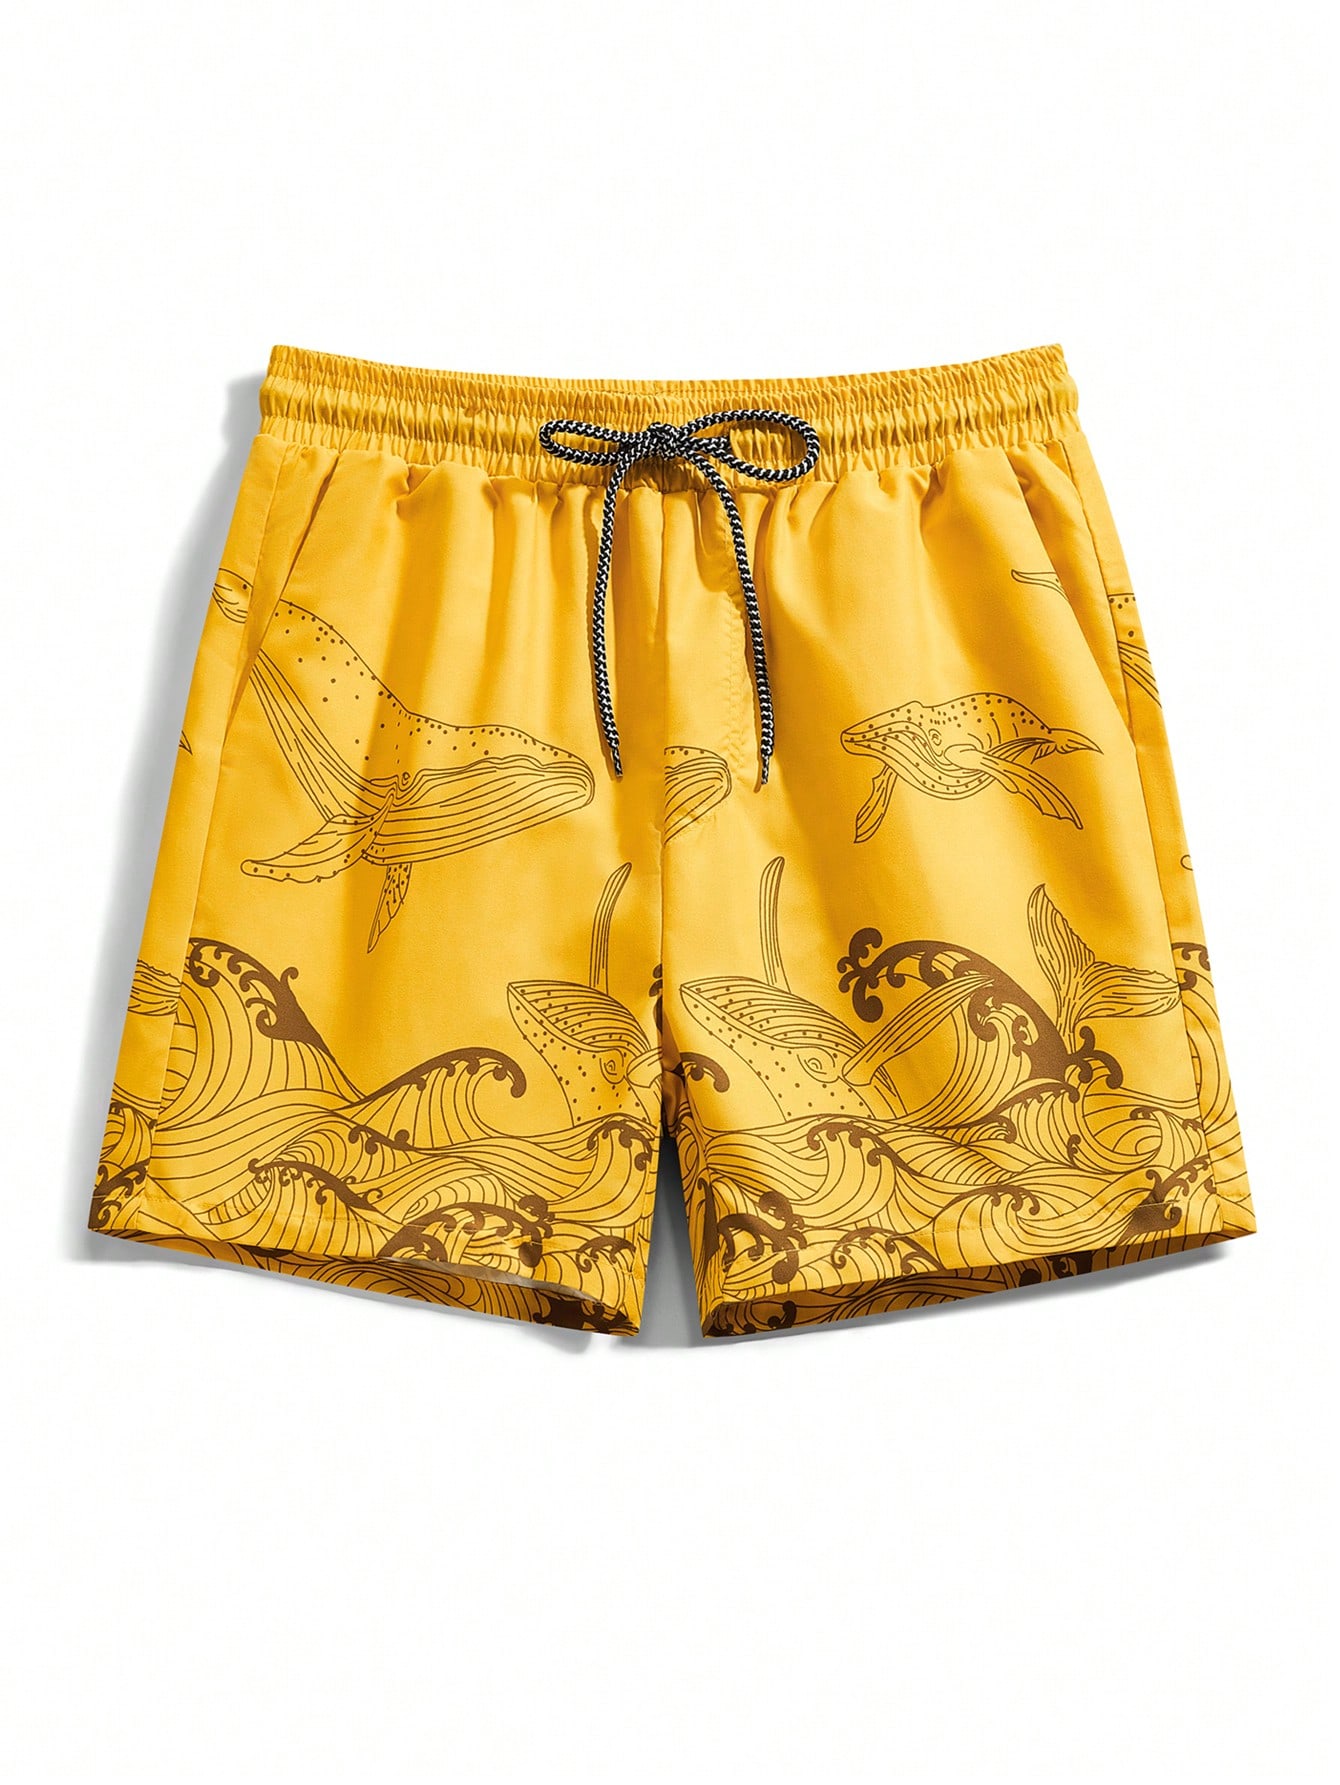 Мужские пляжные шорты Manfinity с мультяшным принтом и завязками на талии, желтый пляжные штаны мужские шорты с узором в виде гуль летние пляжные шорты с 3d принтом модные повседневные мужские шорты 2021 большие размеры